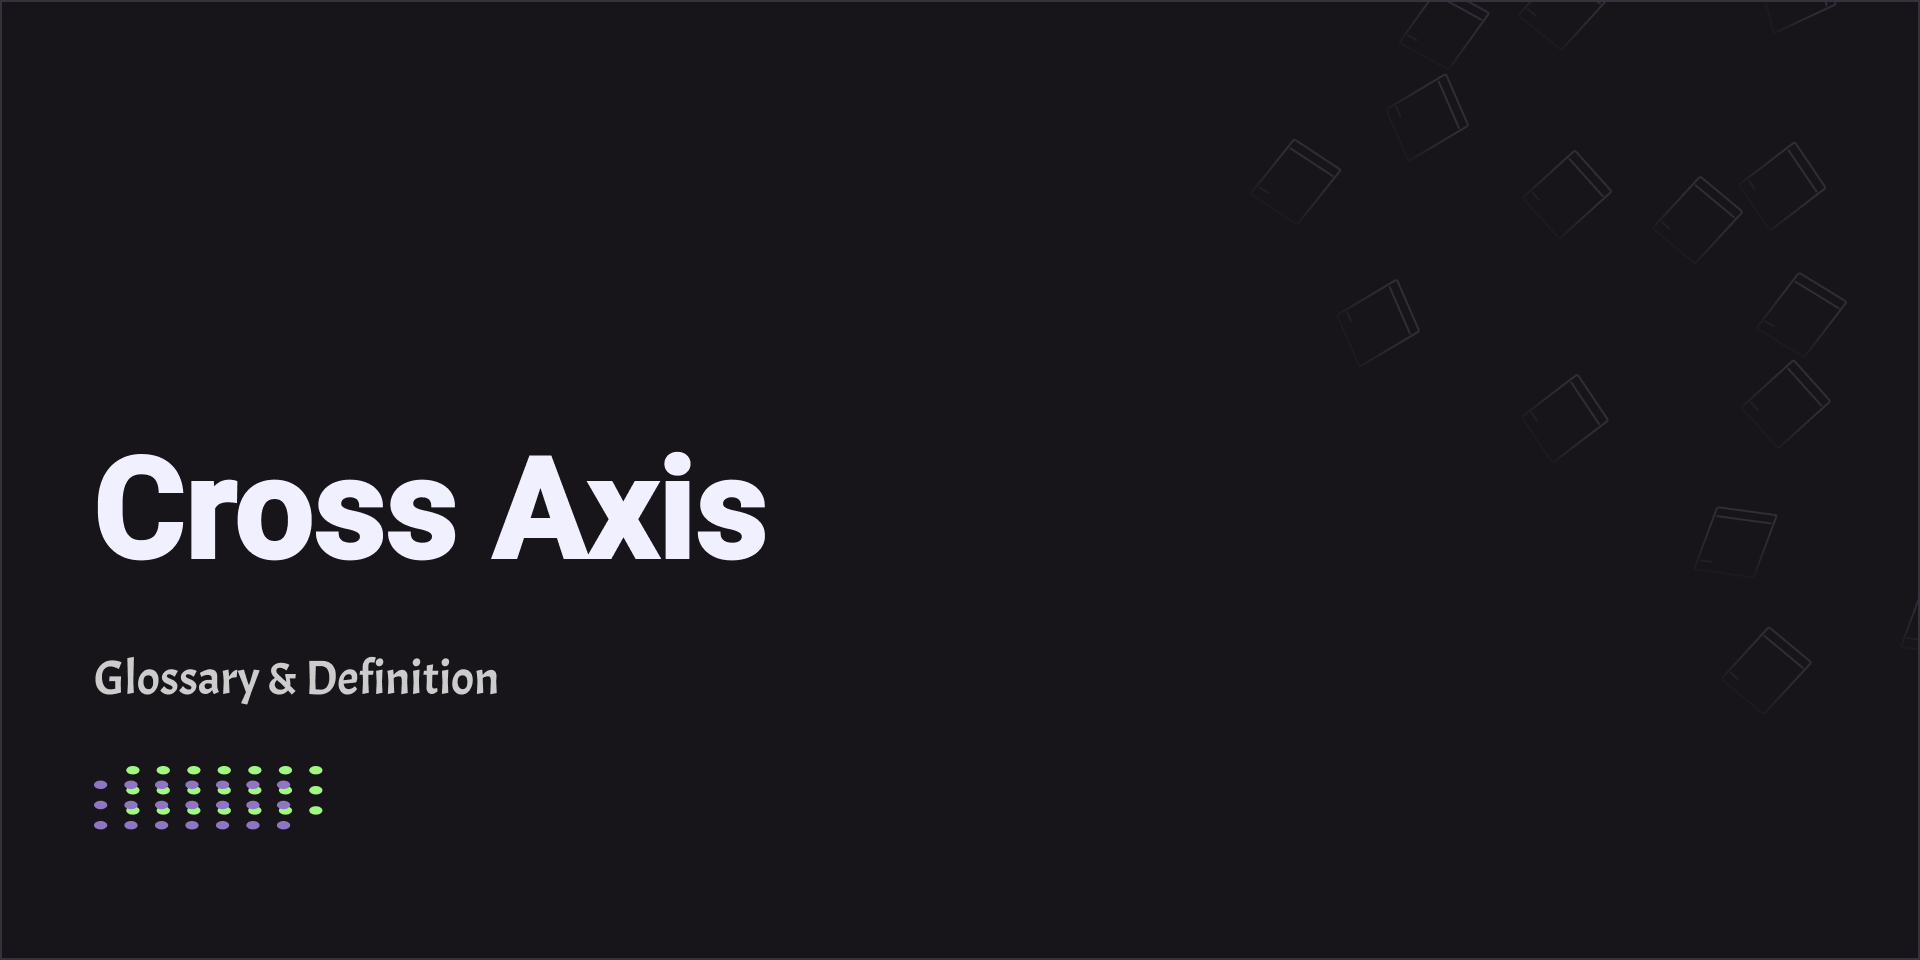 Cross Axis